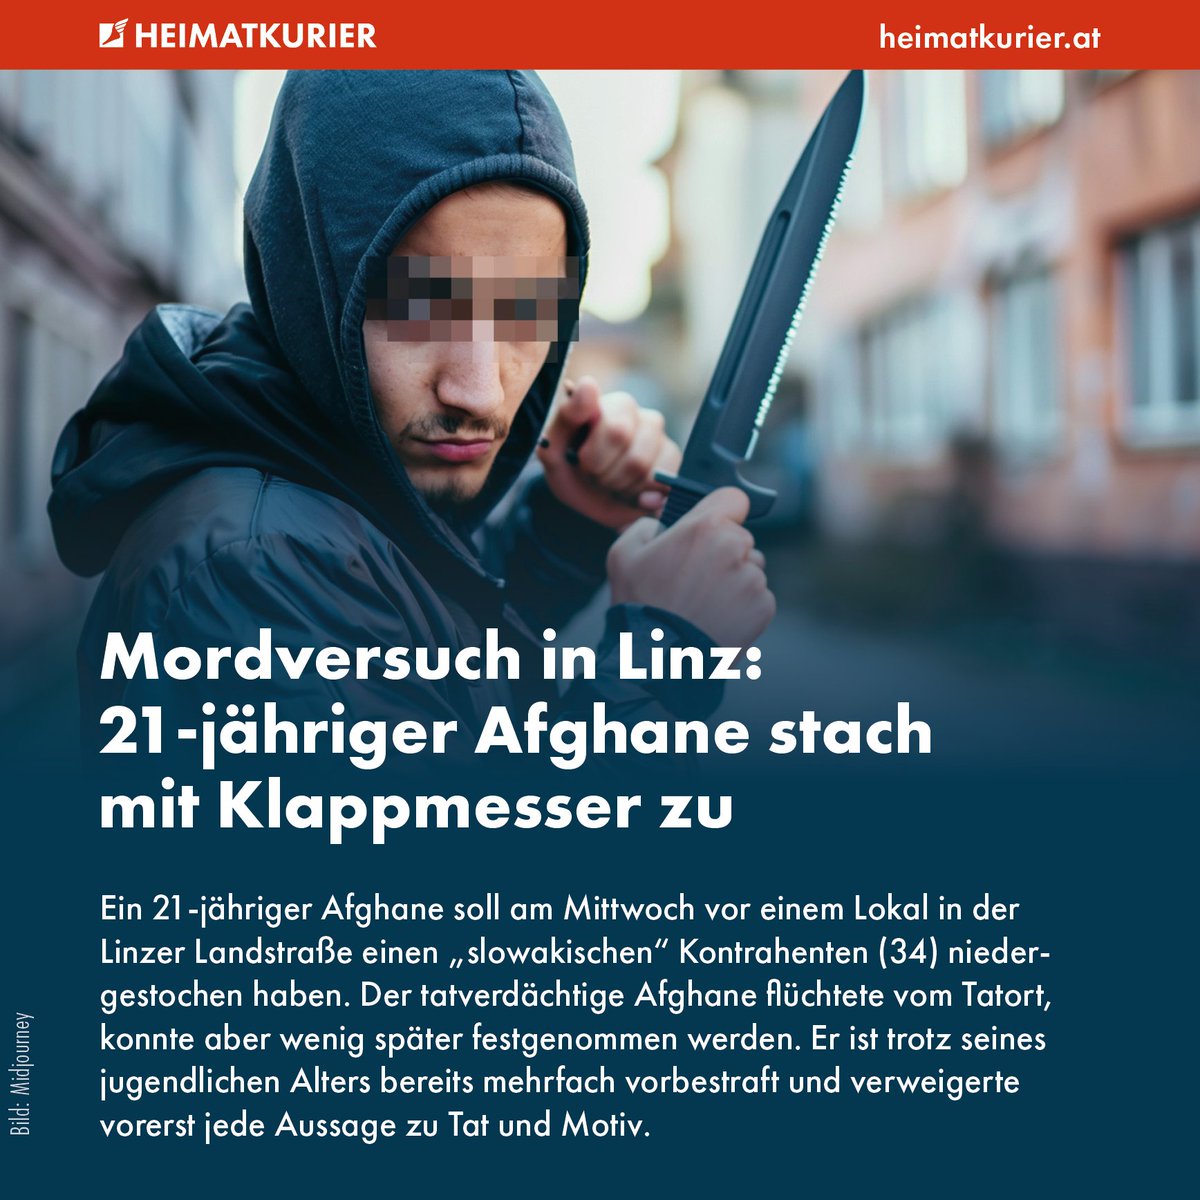 Ein in Linz lebender Afghane (21), der mittlerweile auch die österreichische Staatsbürgerschaft besitzt, soll gestern plötzlich ein 20 Zentimeter langes Klappmesser gezogen haben. Dieses soll er einem 34-jährigen „Slowaken” – vermutlich ein Angehöriger des „fahrenden Volkes” – in…